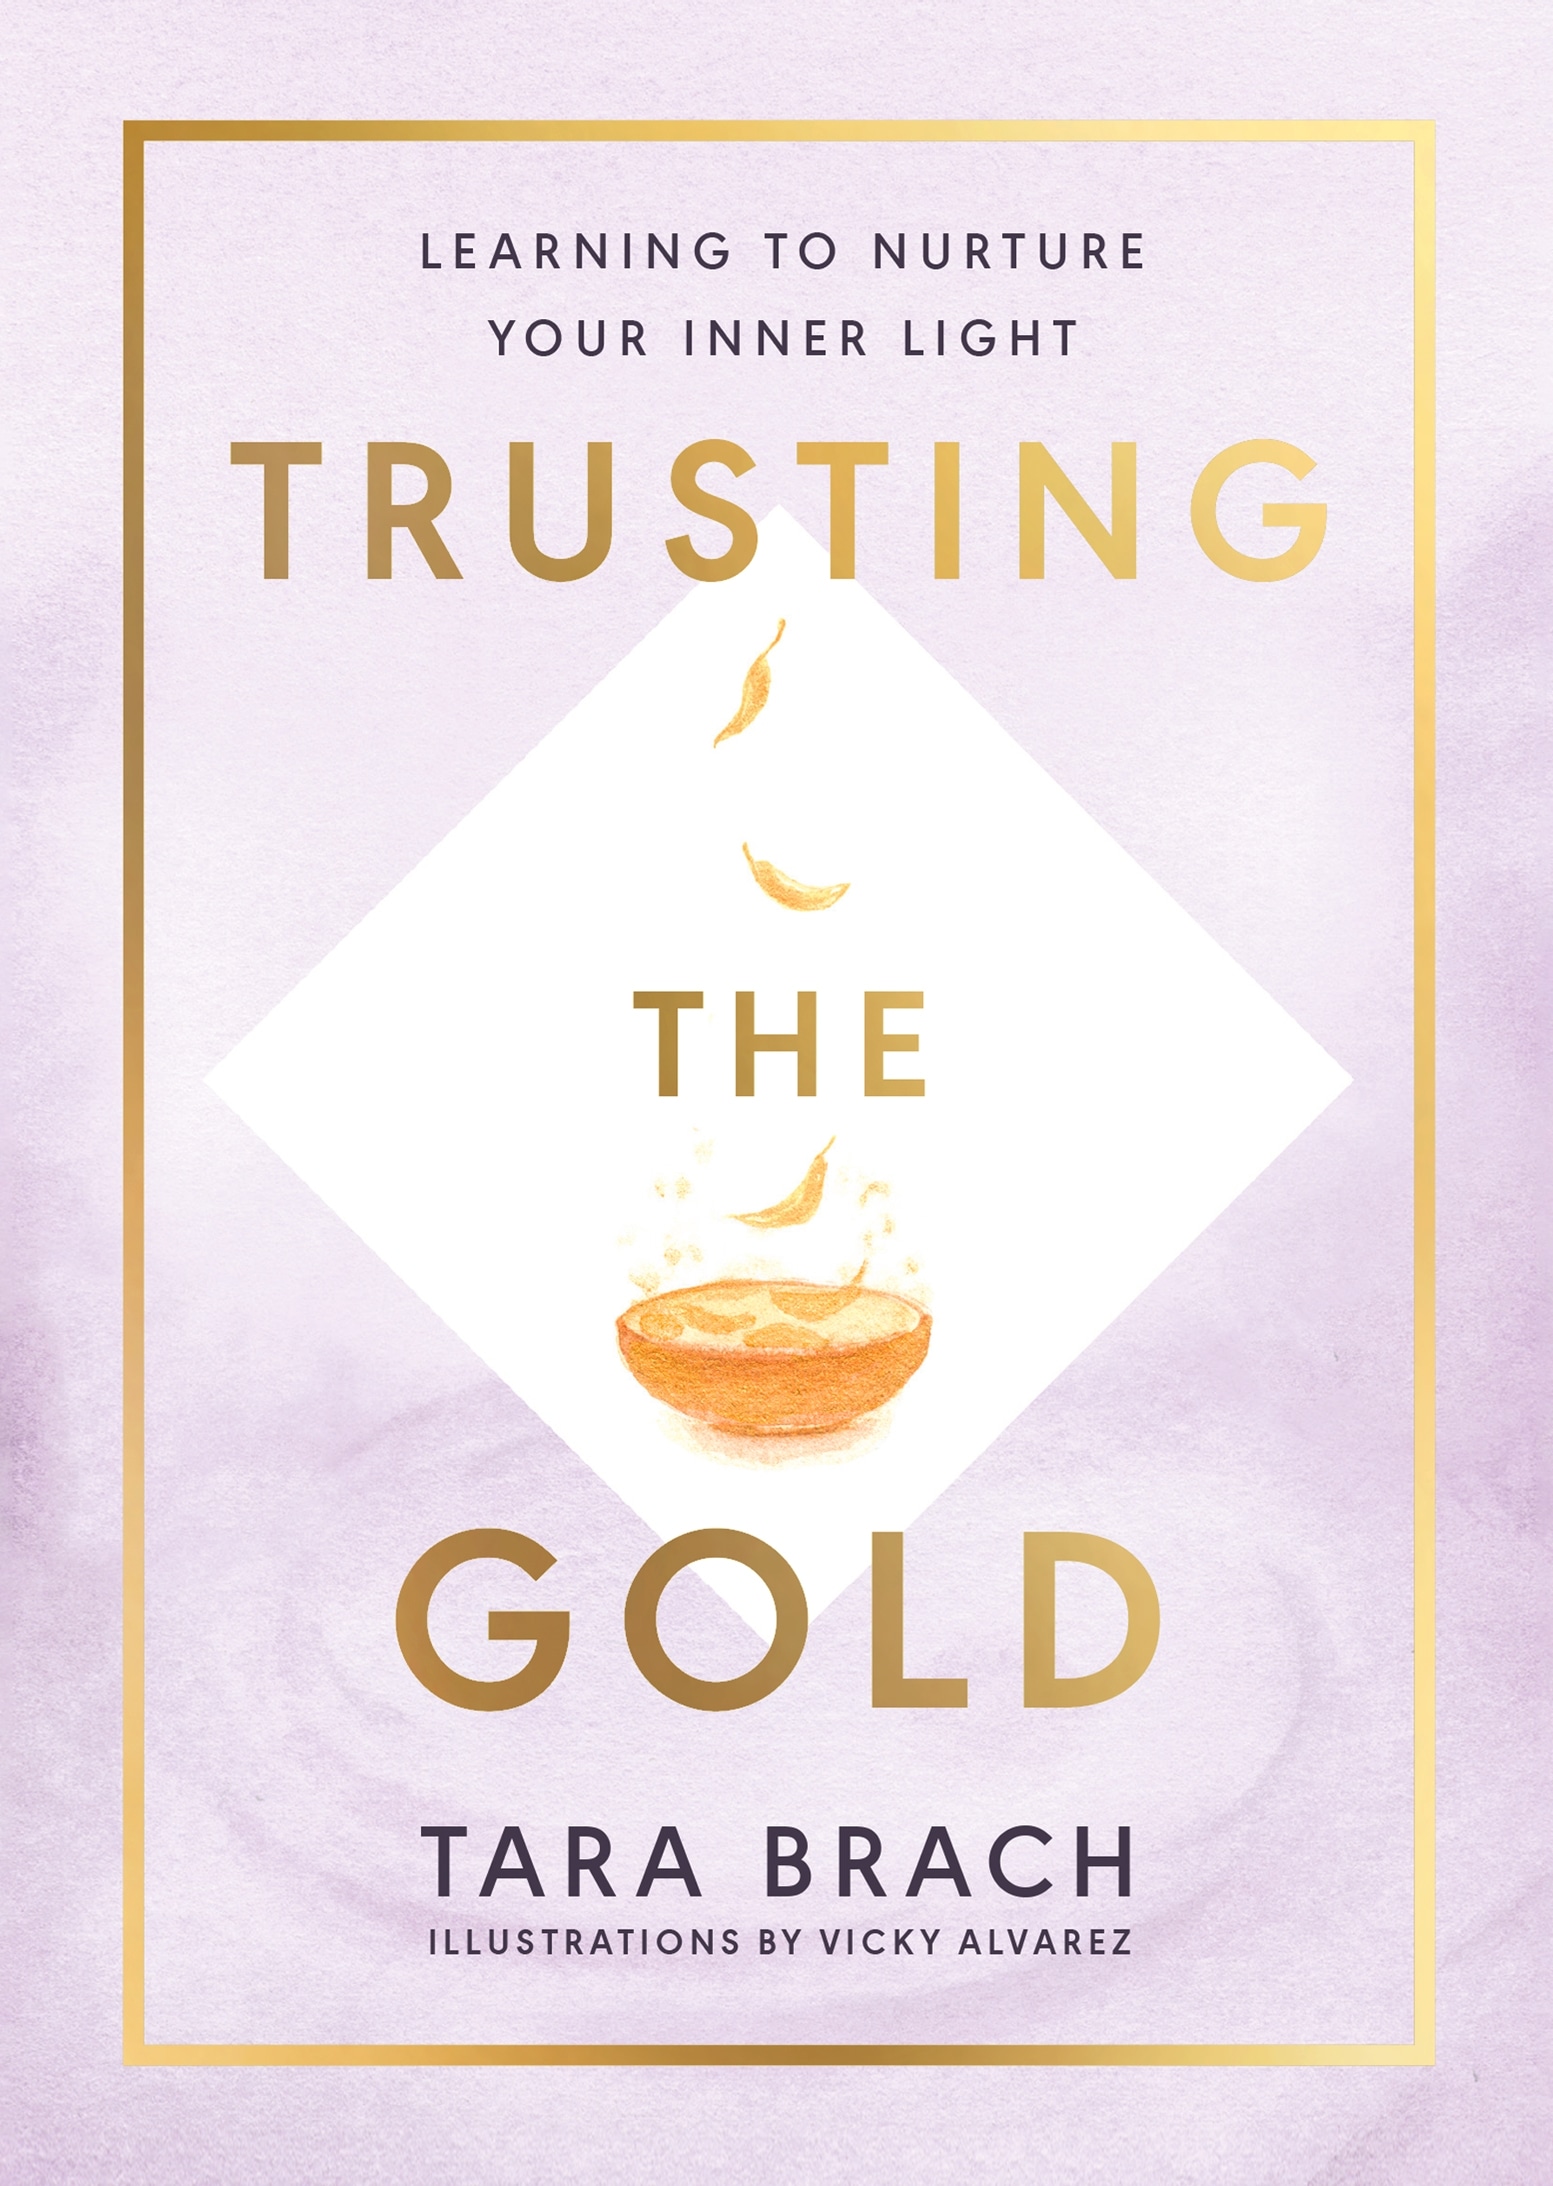 Book “Trusting the Gold” by Tara Brach — June 3, 2021